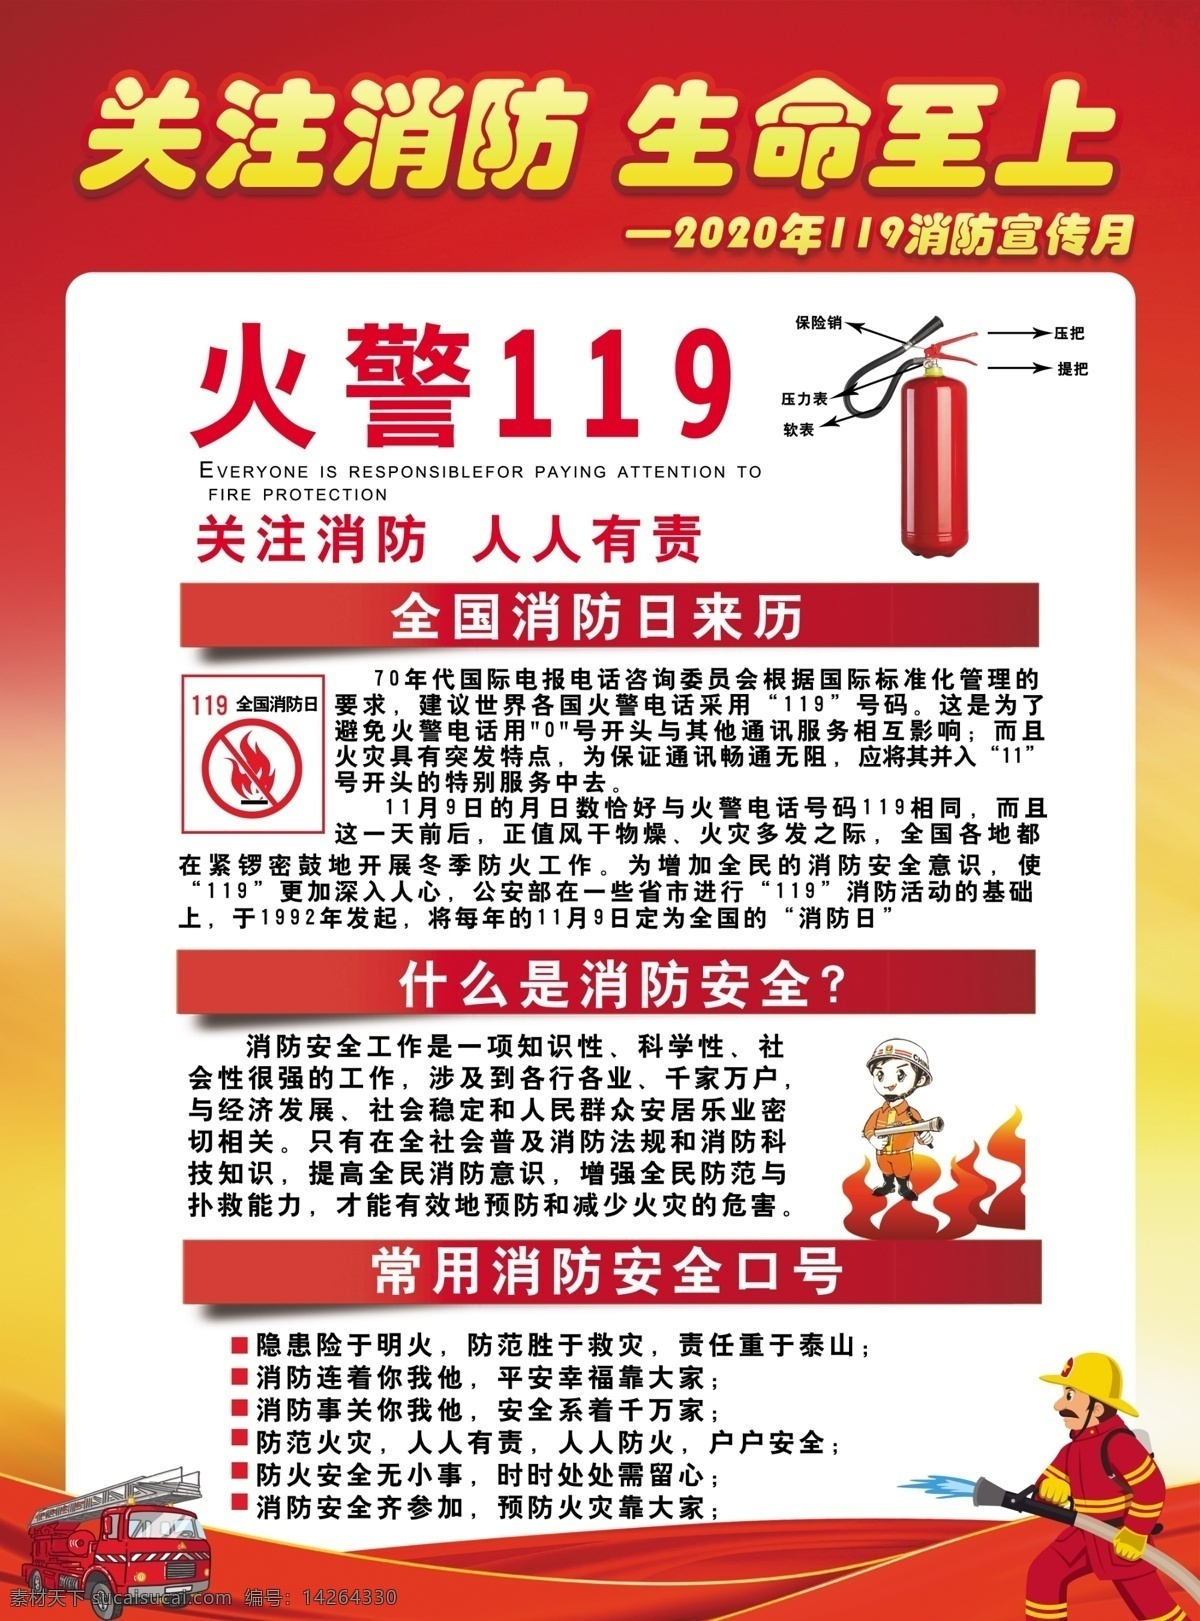 2020 年 消防 宣传海报 消防封面 海报 关注消防 灭火器 分层